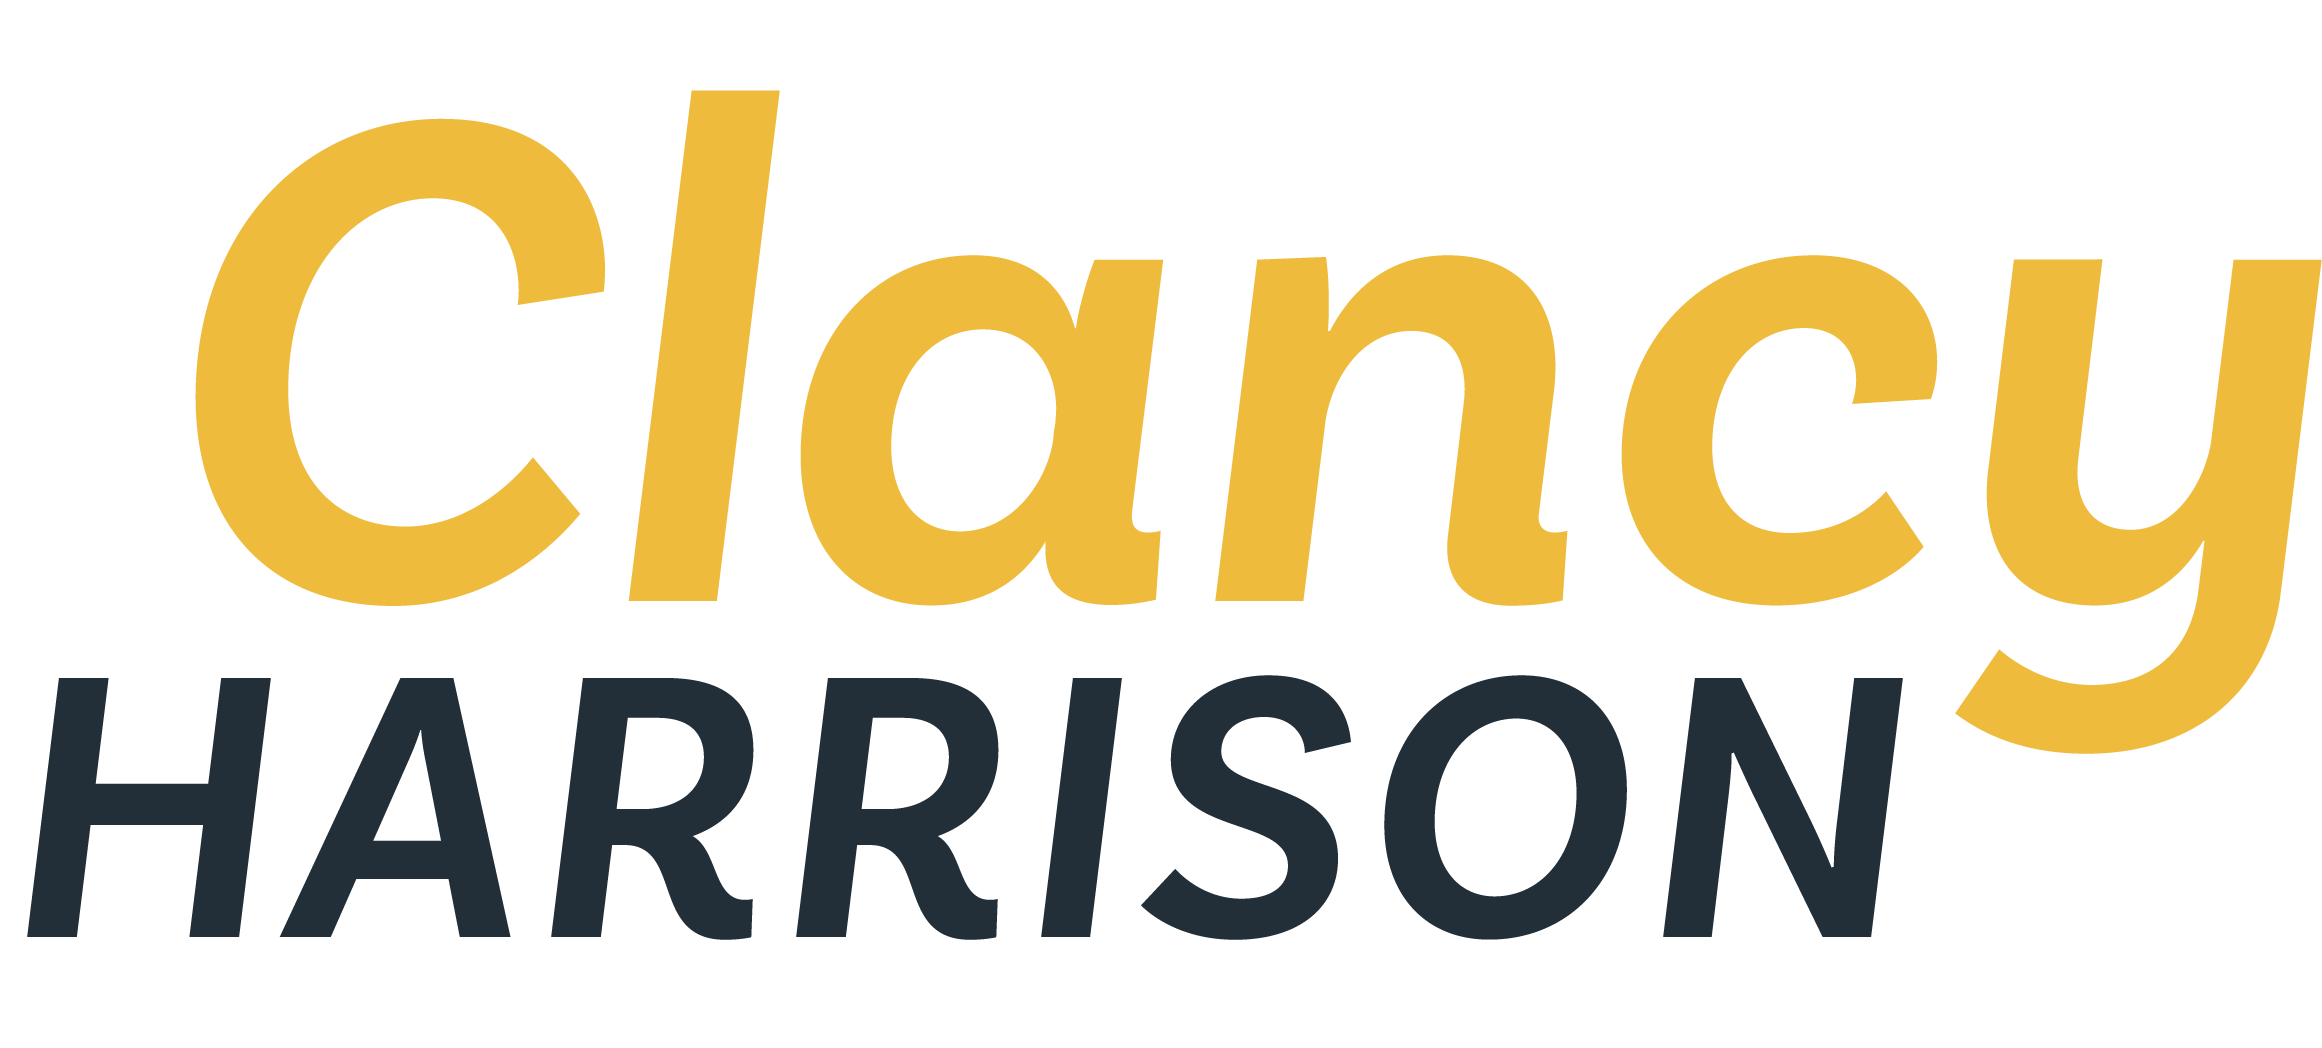 Clancy Harrison logo